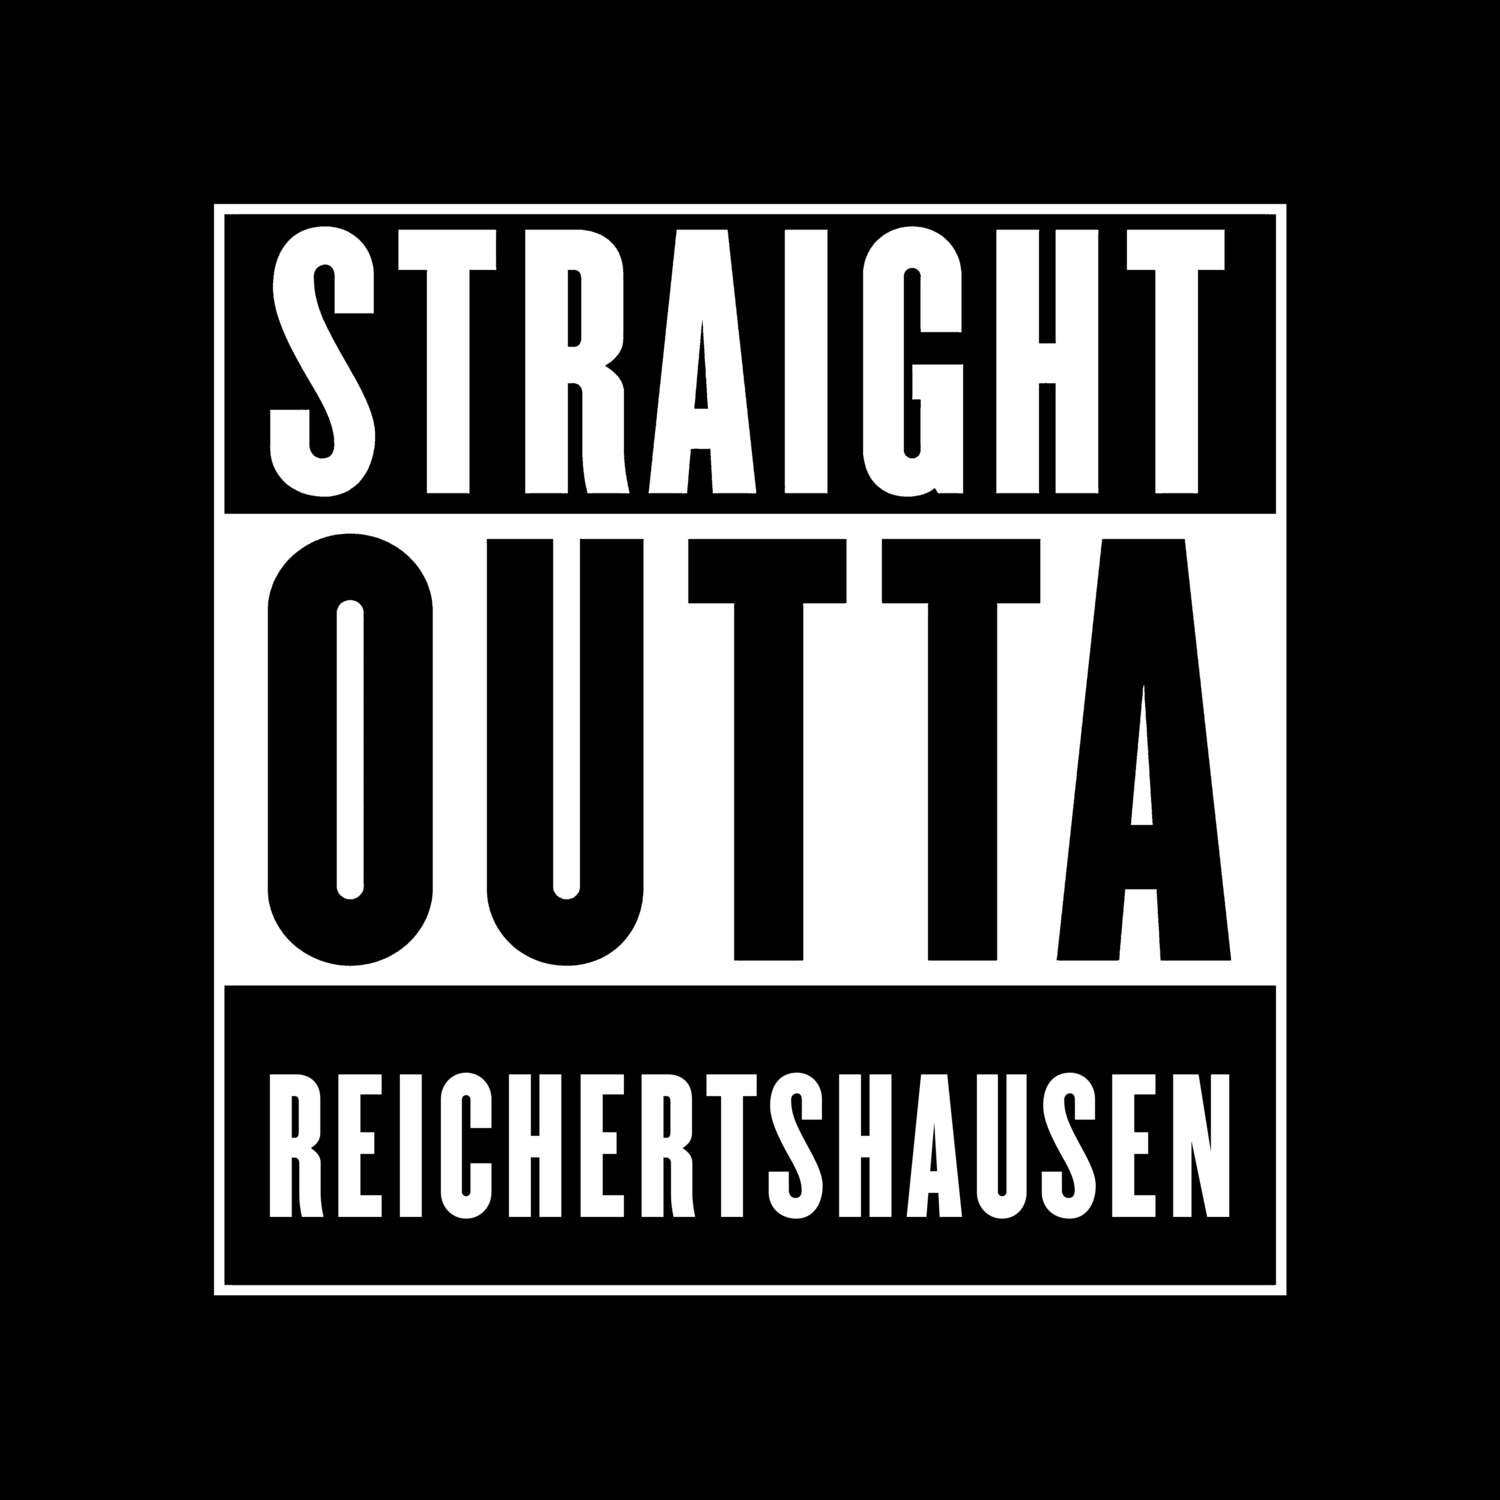 Reichertshausen T-Shirt »Straight Outta«